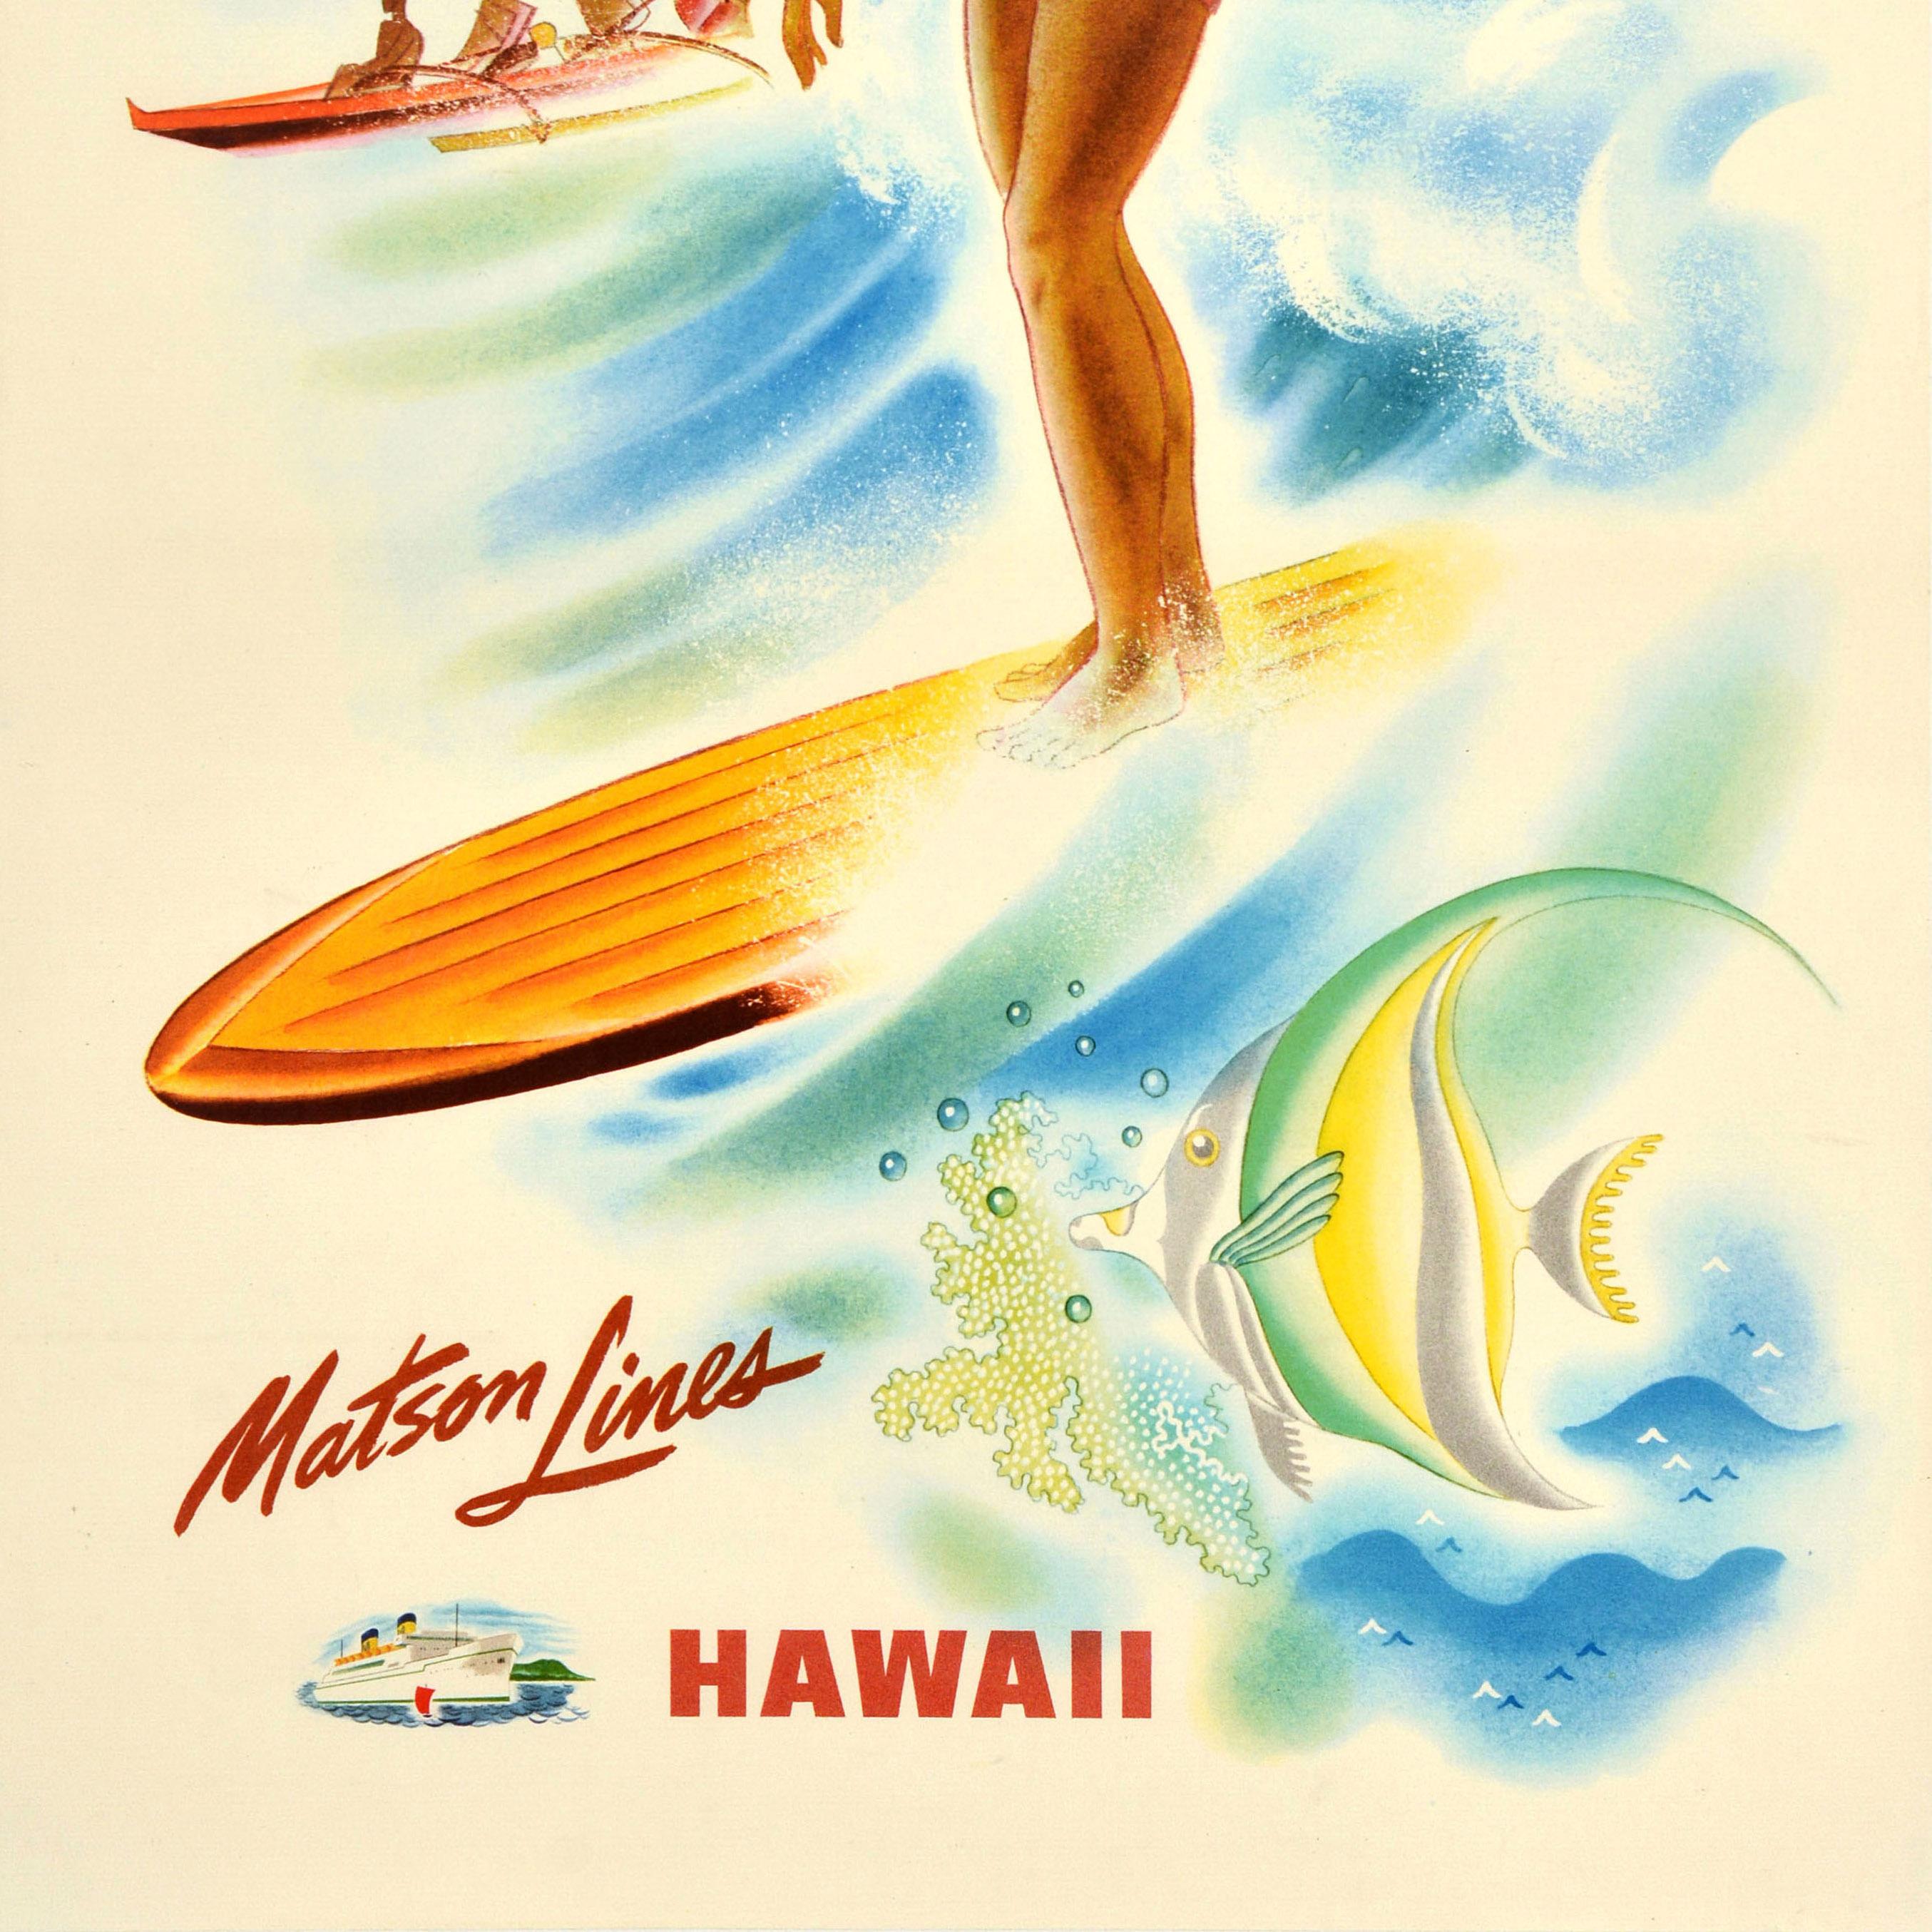 Original Vintage-Reiseplakat - Matson Lines Hawaii - mit einem farbenfrohen Bild eines lächelnden Surfers in rot-weißen Badeshorts, der in einem traditionellen Ausleger-Surfkanu auf den Wellen reitet, und dem vulkanischen Berg Diamond Head in der